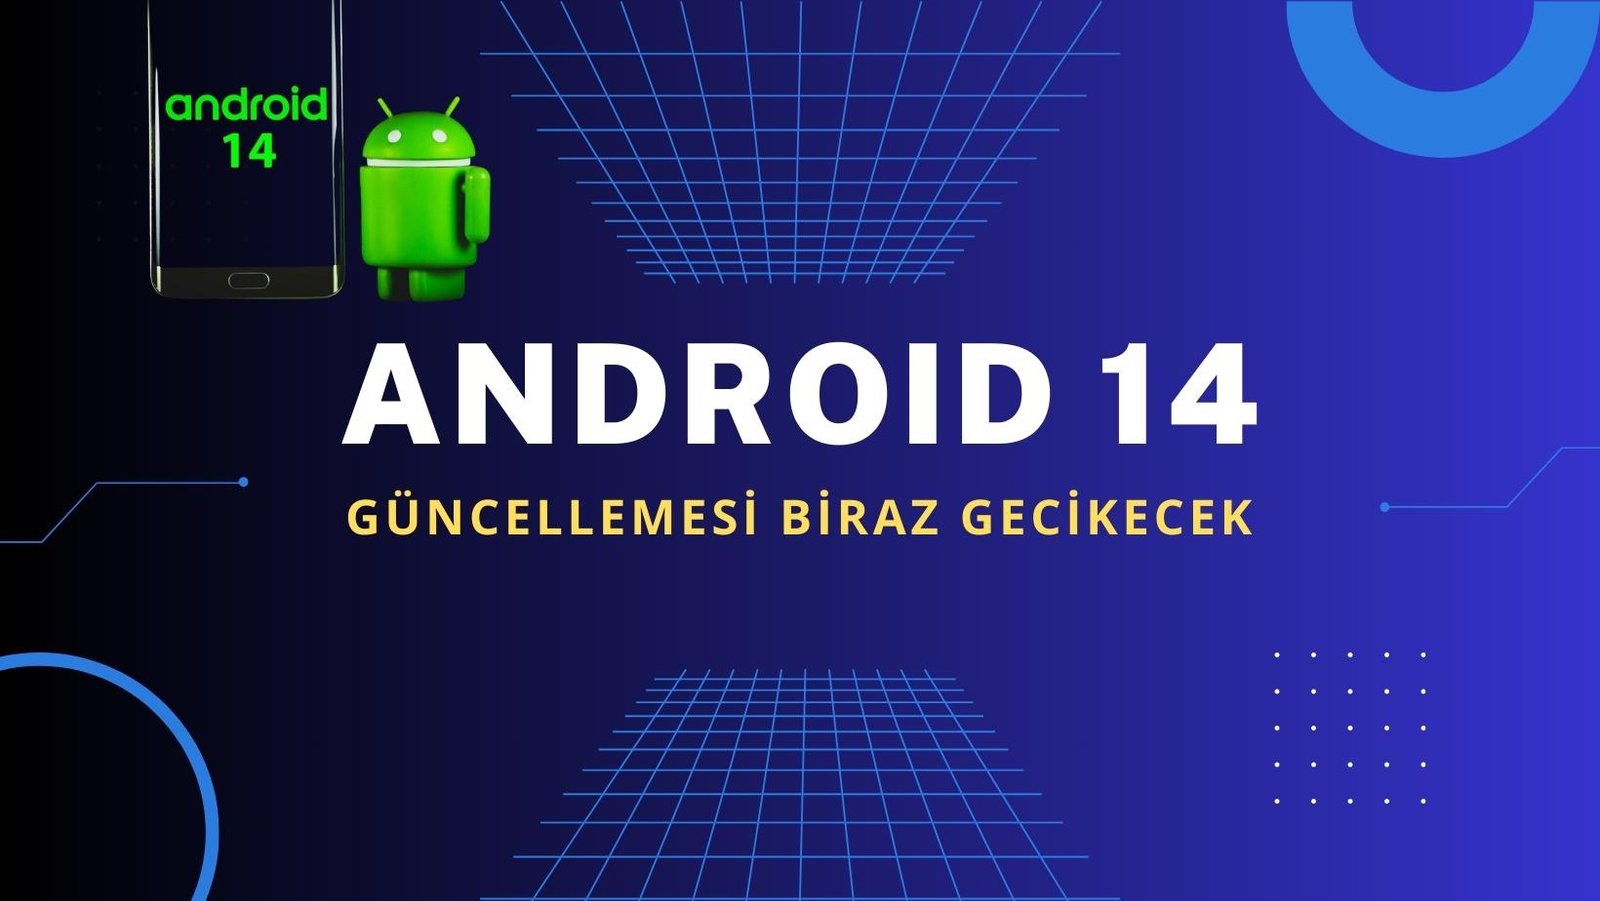 android 14 guncellemesi gecikecek